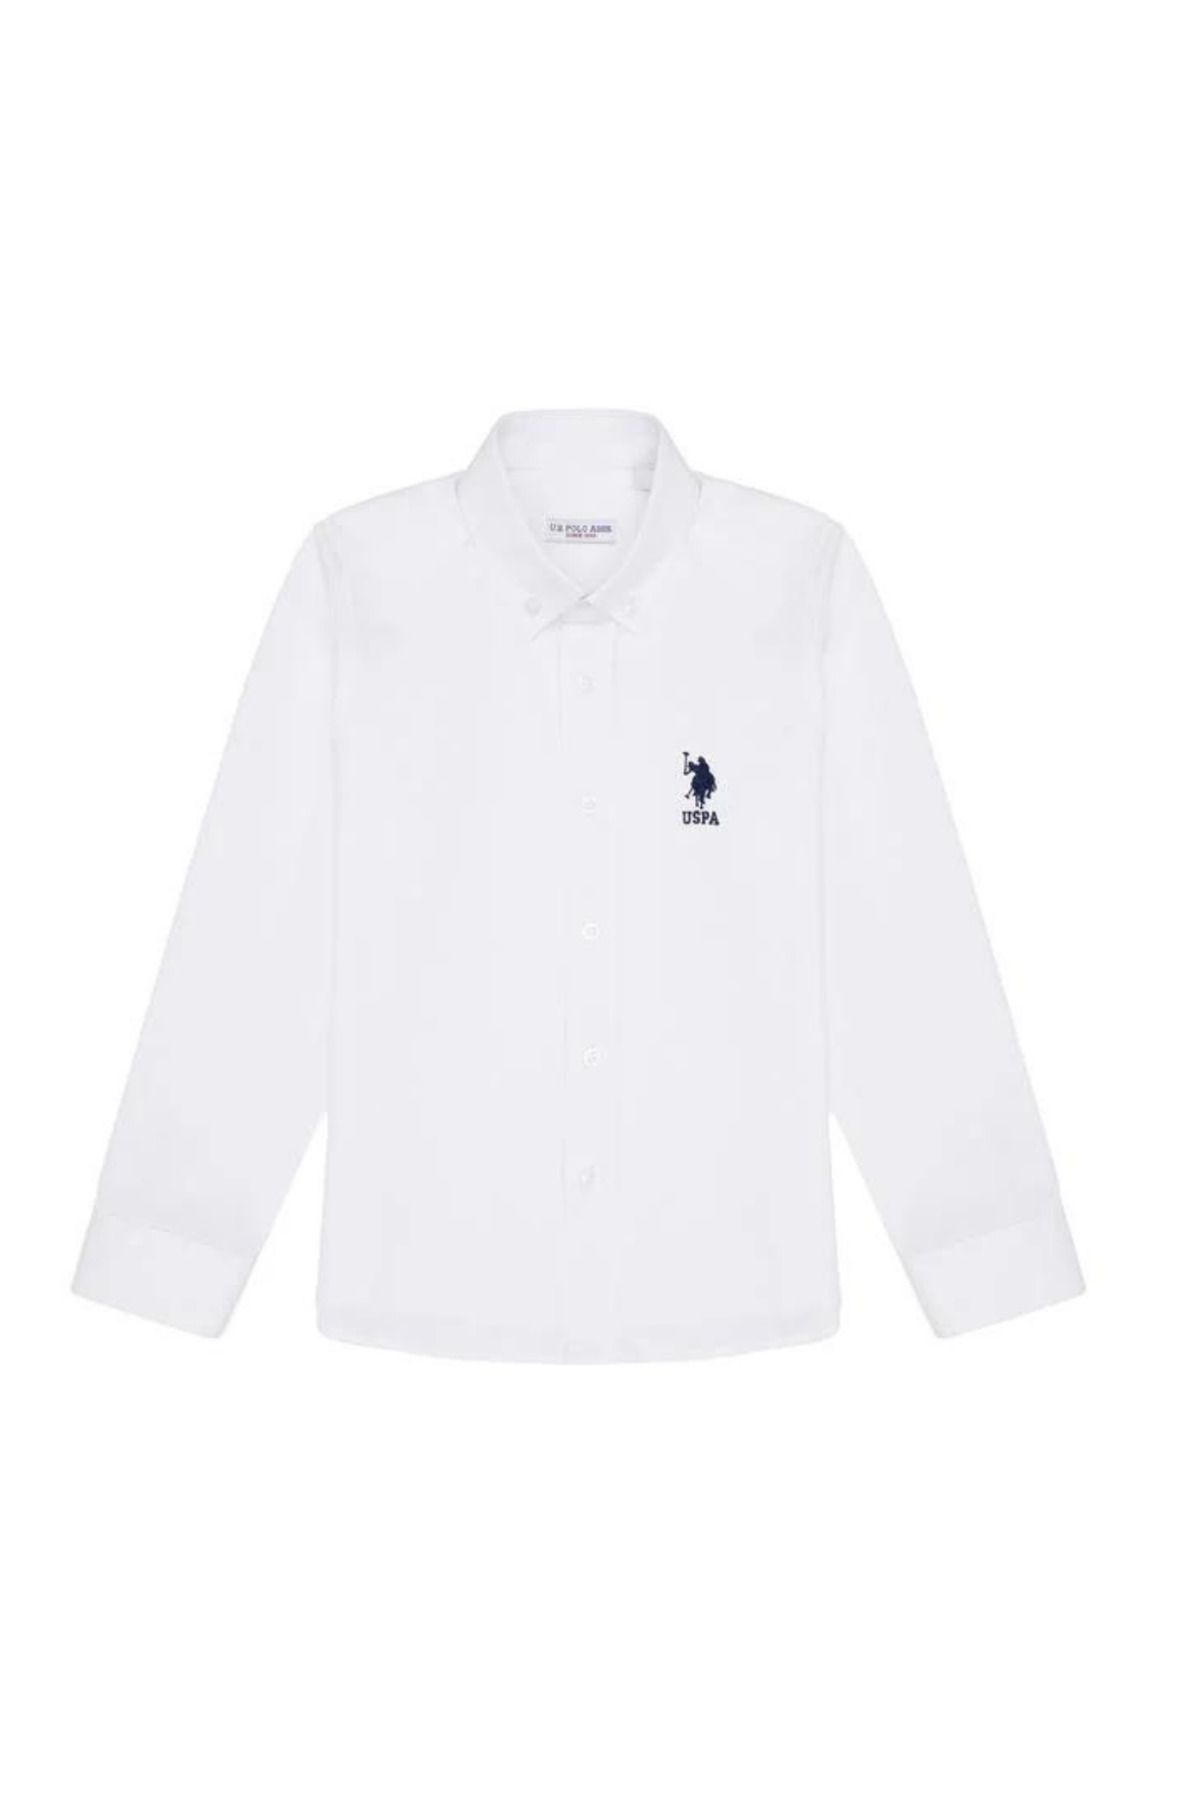 U.S. Polo Assn. Erkek Çocuk Beyaz Uzun Kollu Basic Gömlek